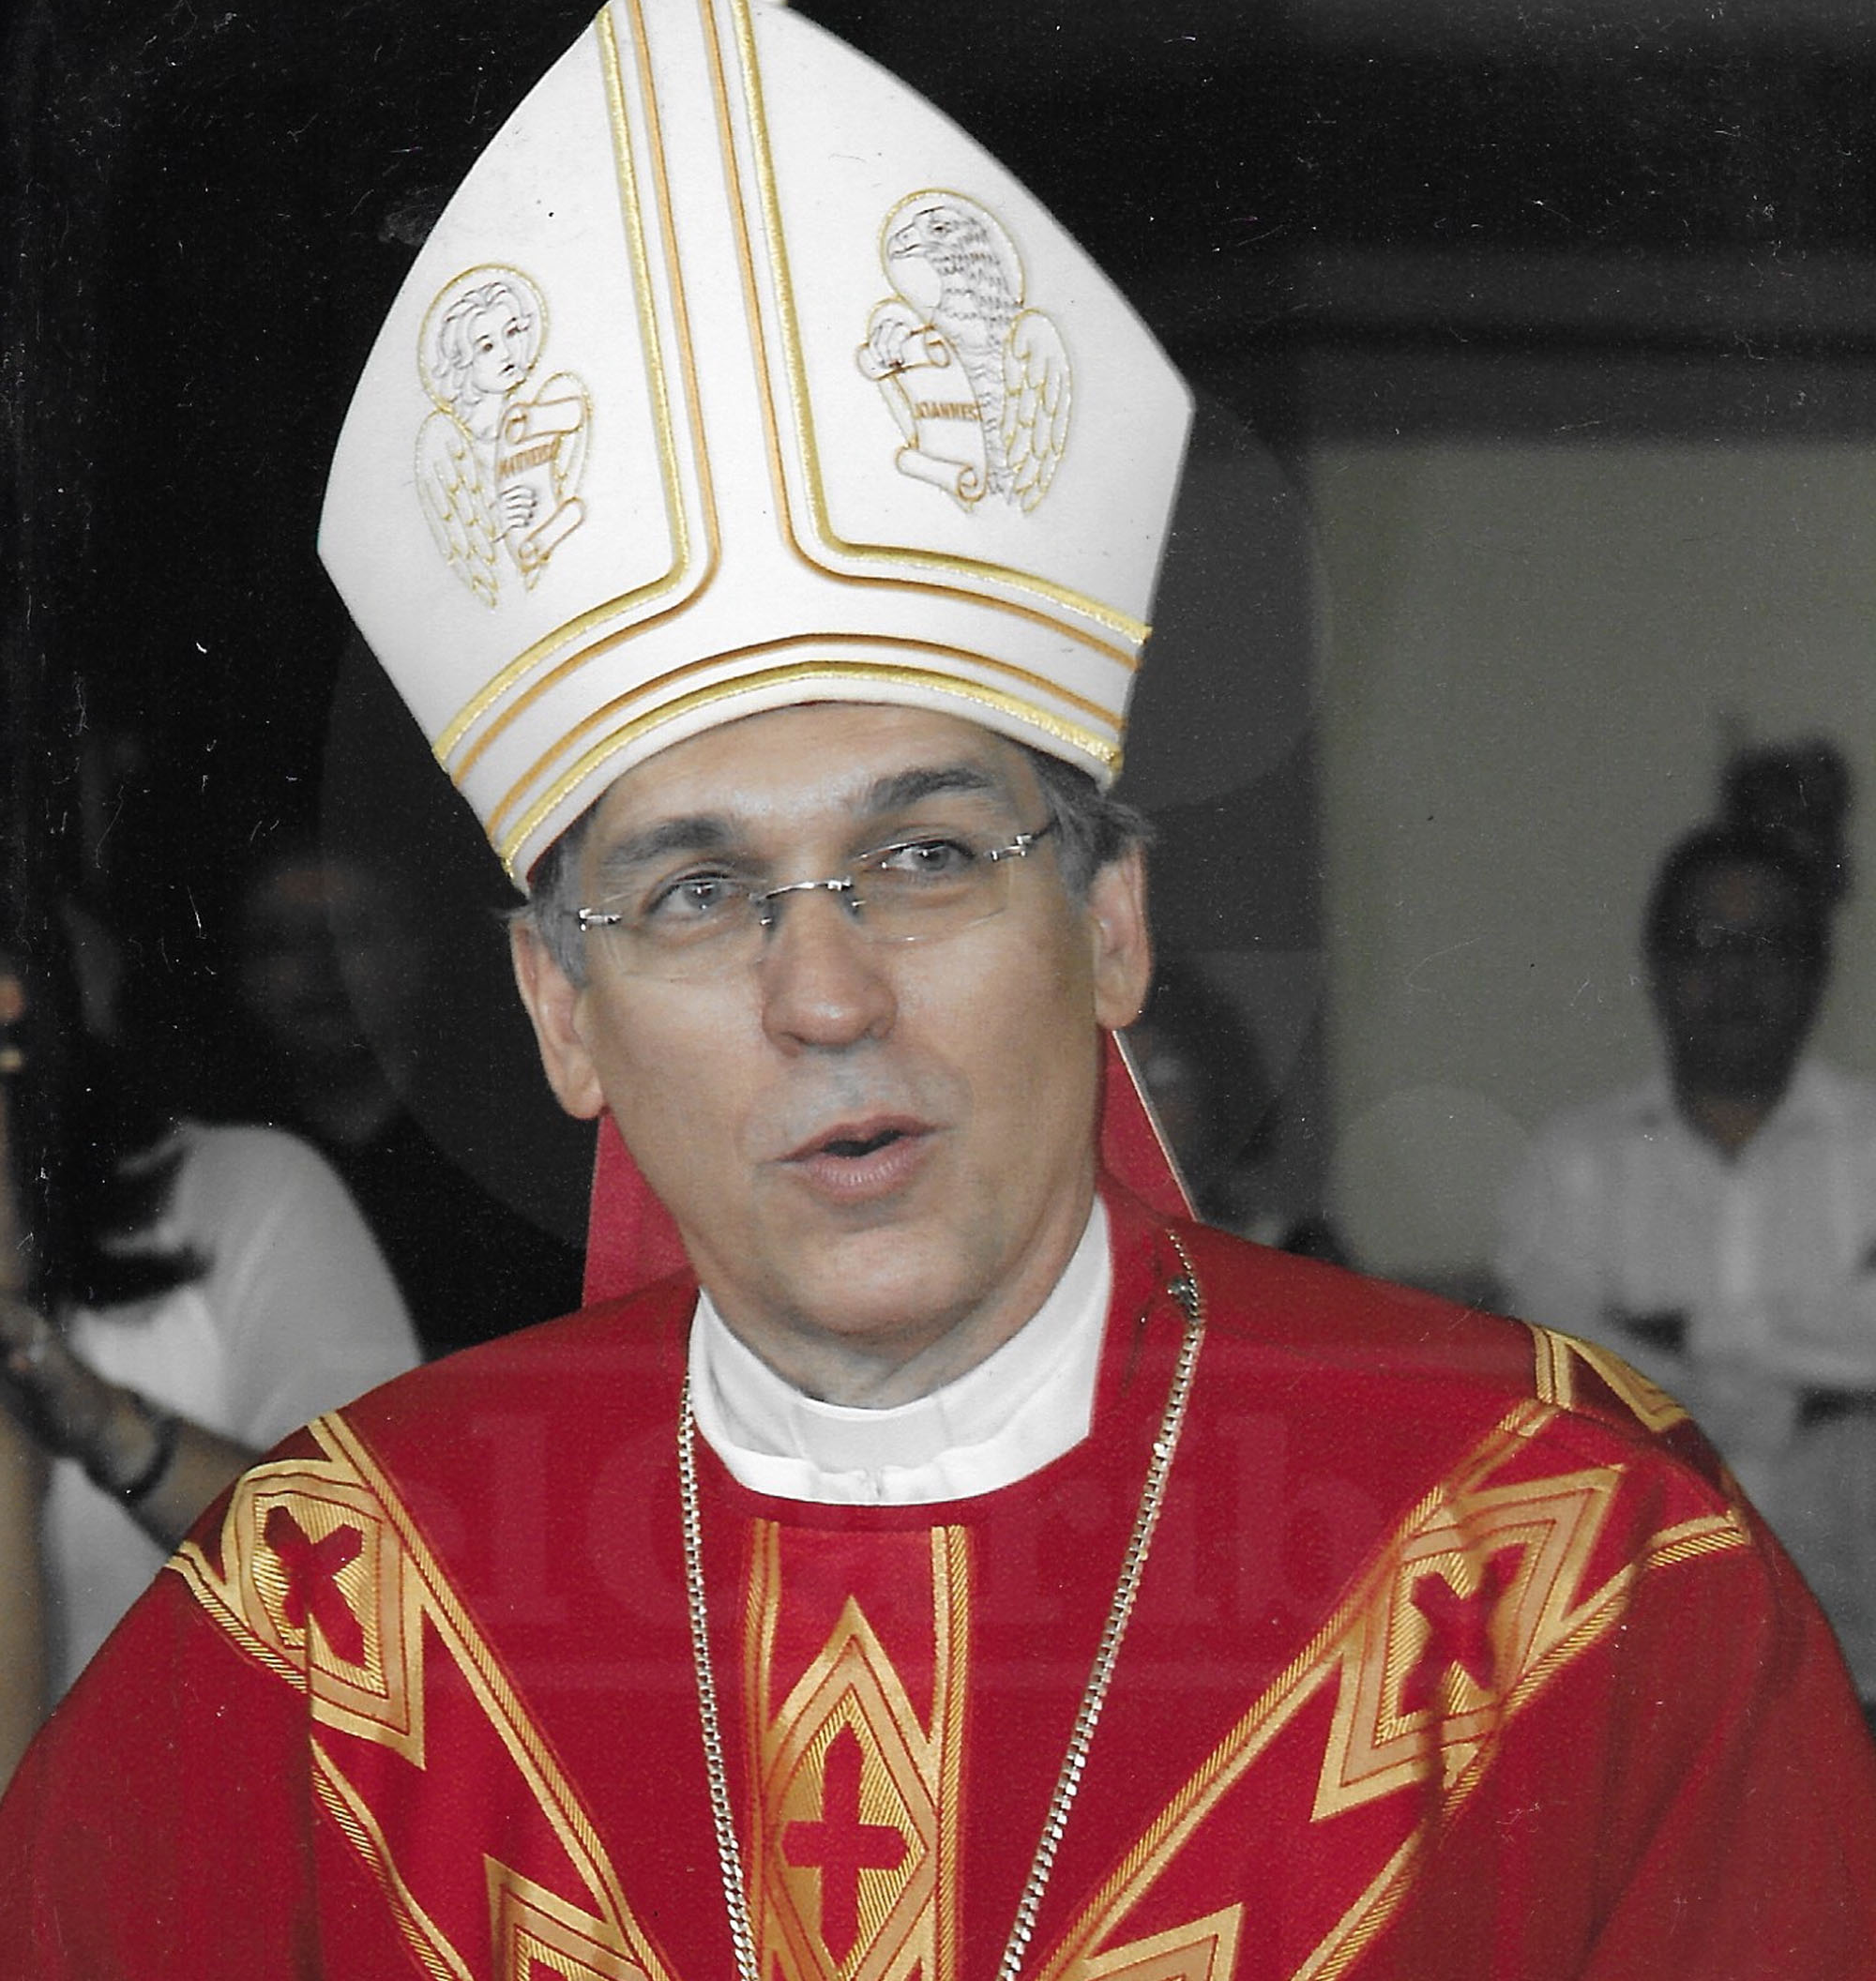 1617309021 754 TBTCaribe Victor Masalles de la natacion a ser obispo de